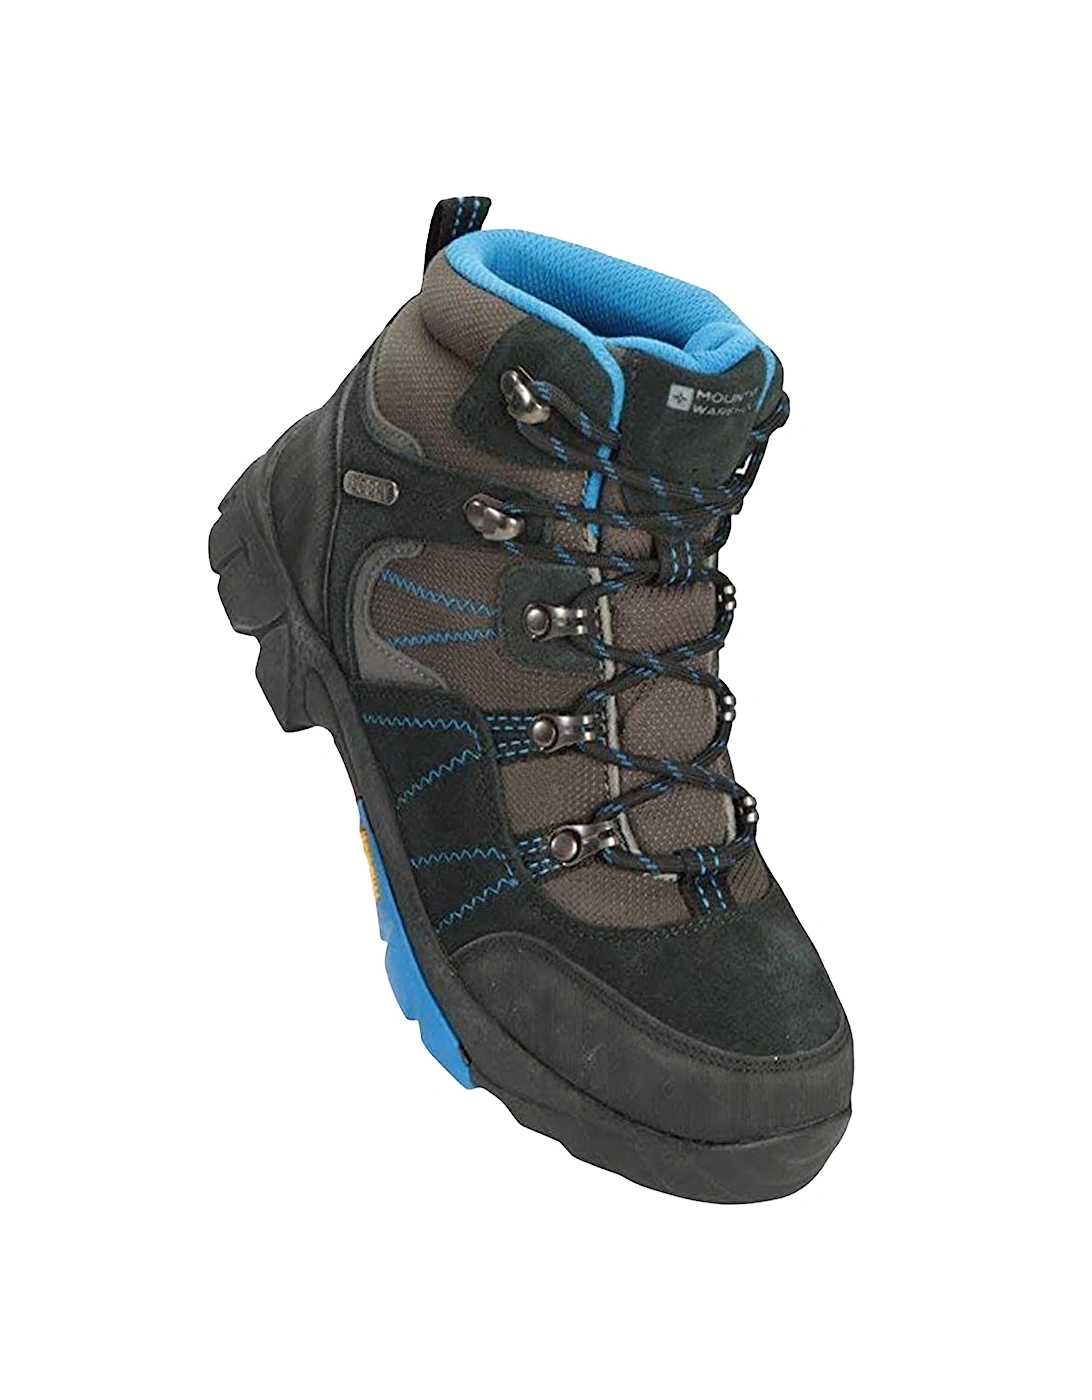 Childrens/Kids Edinburgh Waterproof Suede Walking Boots, 6 of 5